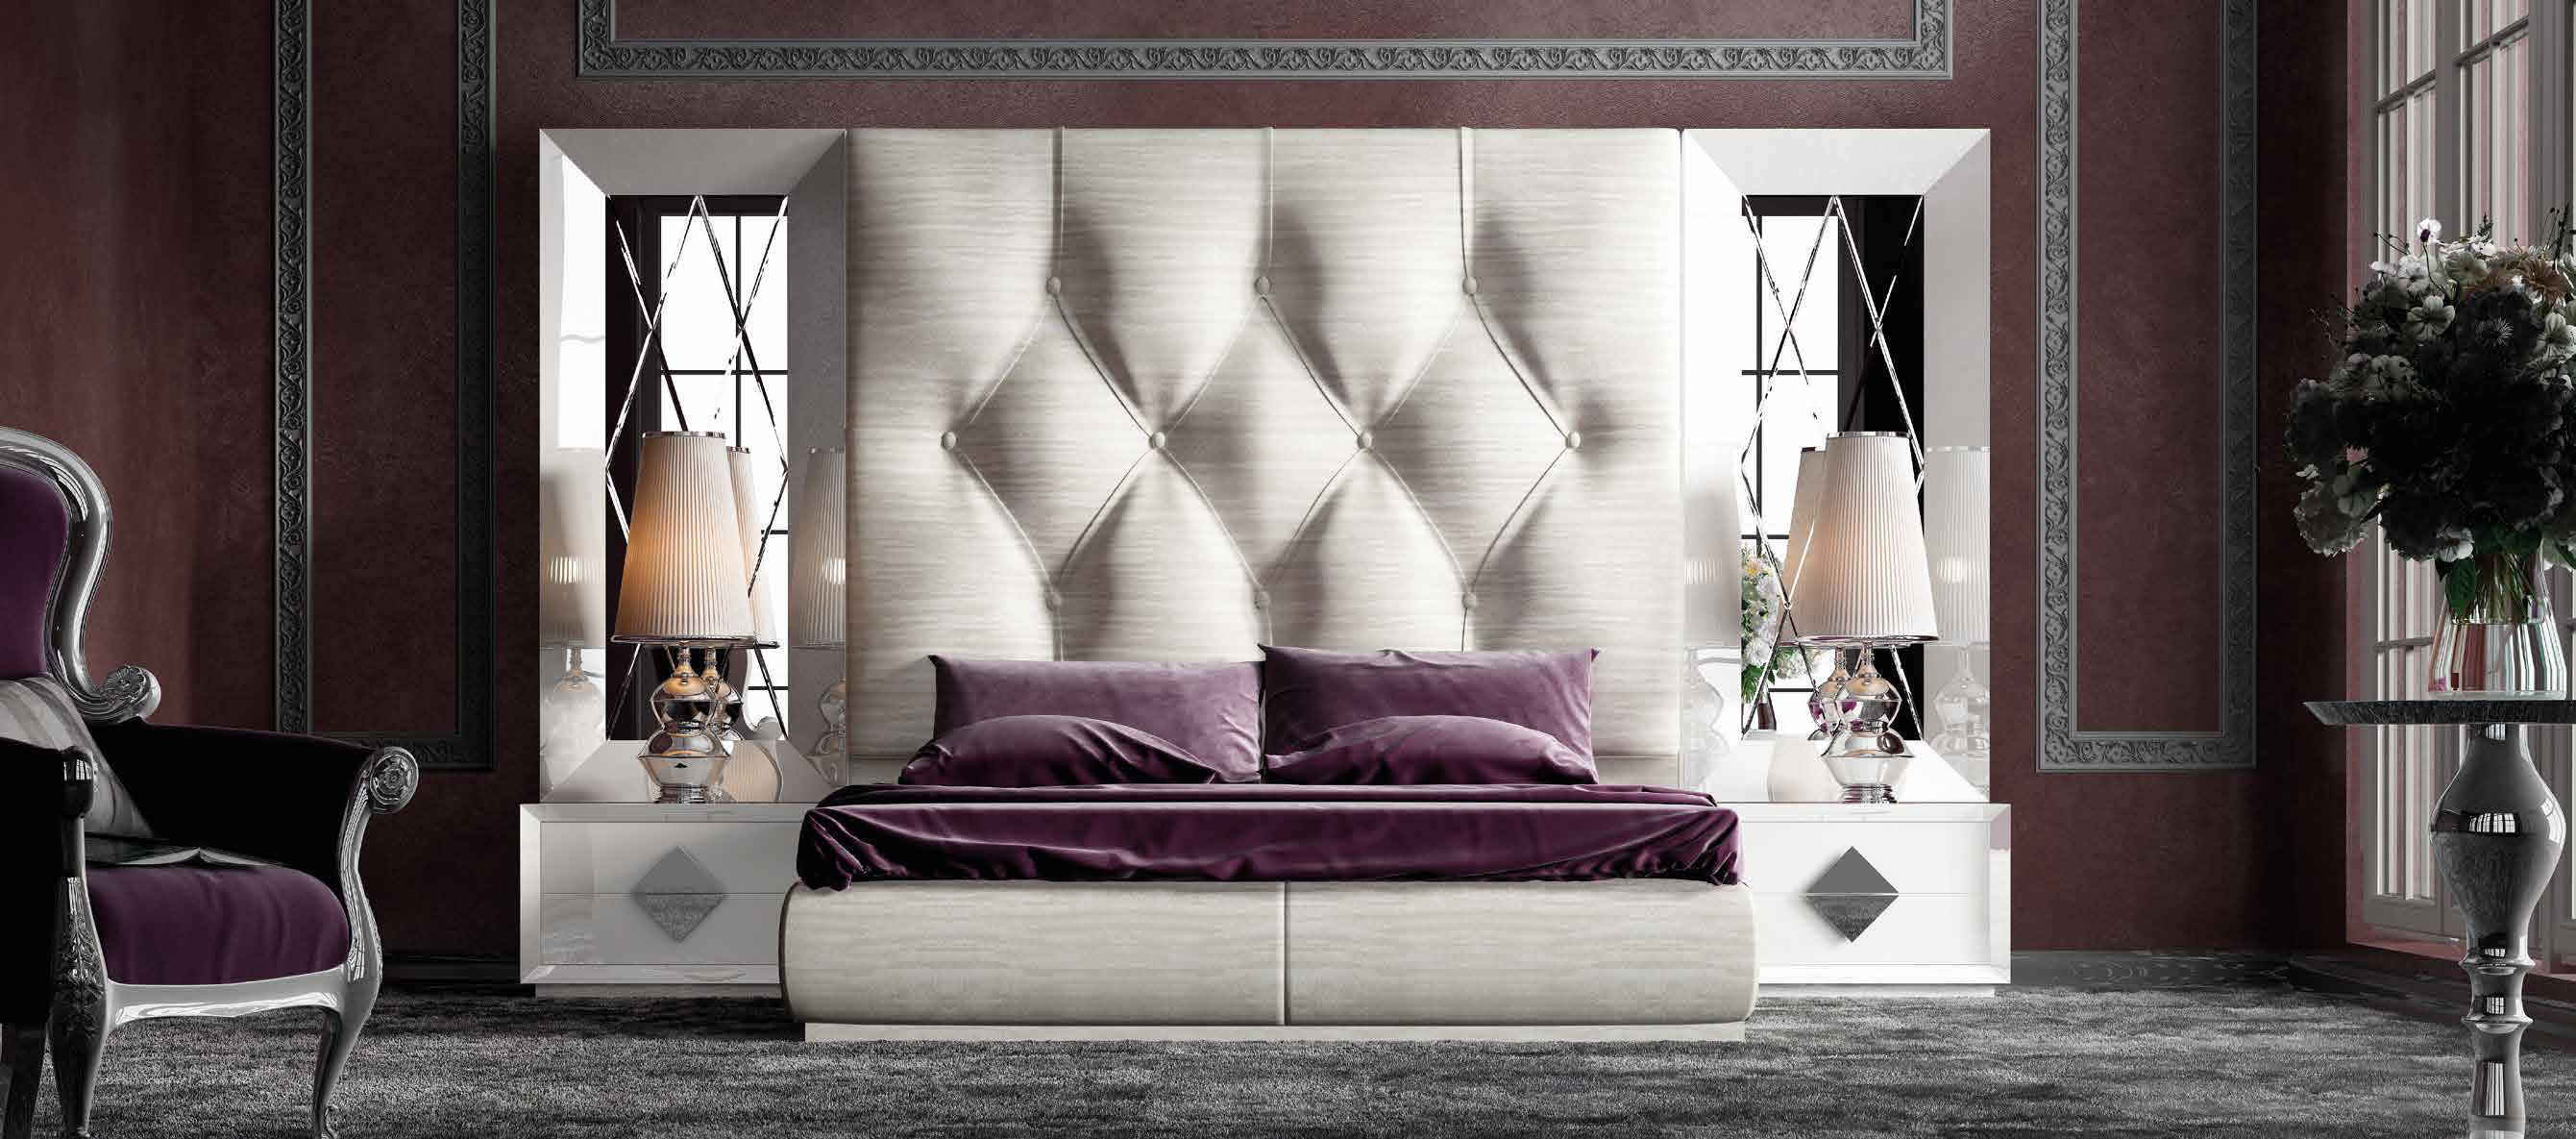 Brands Franco Furniture Avanty Bedrooms, Spain DOR 78